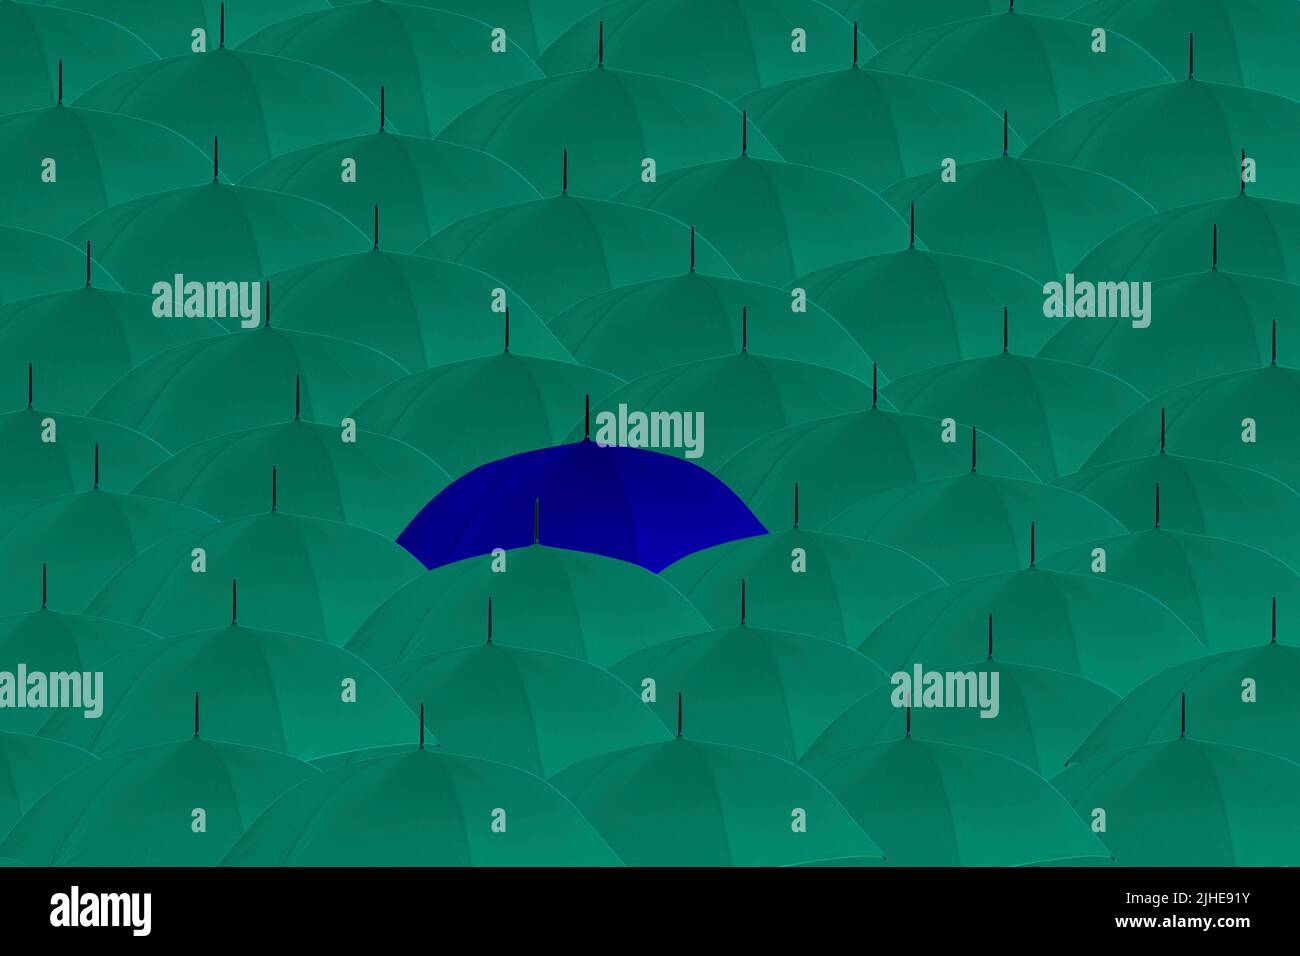 Heben Sie sich von der Masse ab seltsame One Out Konzept Menge von Aqua-Regenschirmen ein blauer Regenschirm auffallen Stockfoto